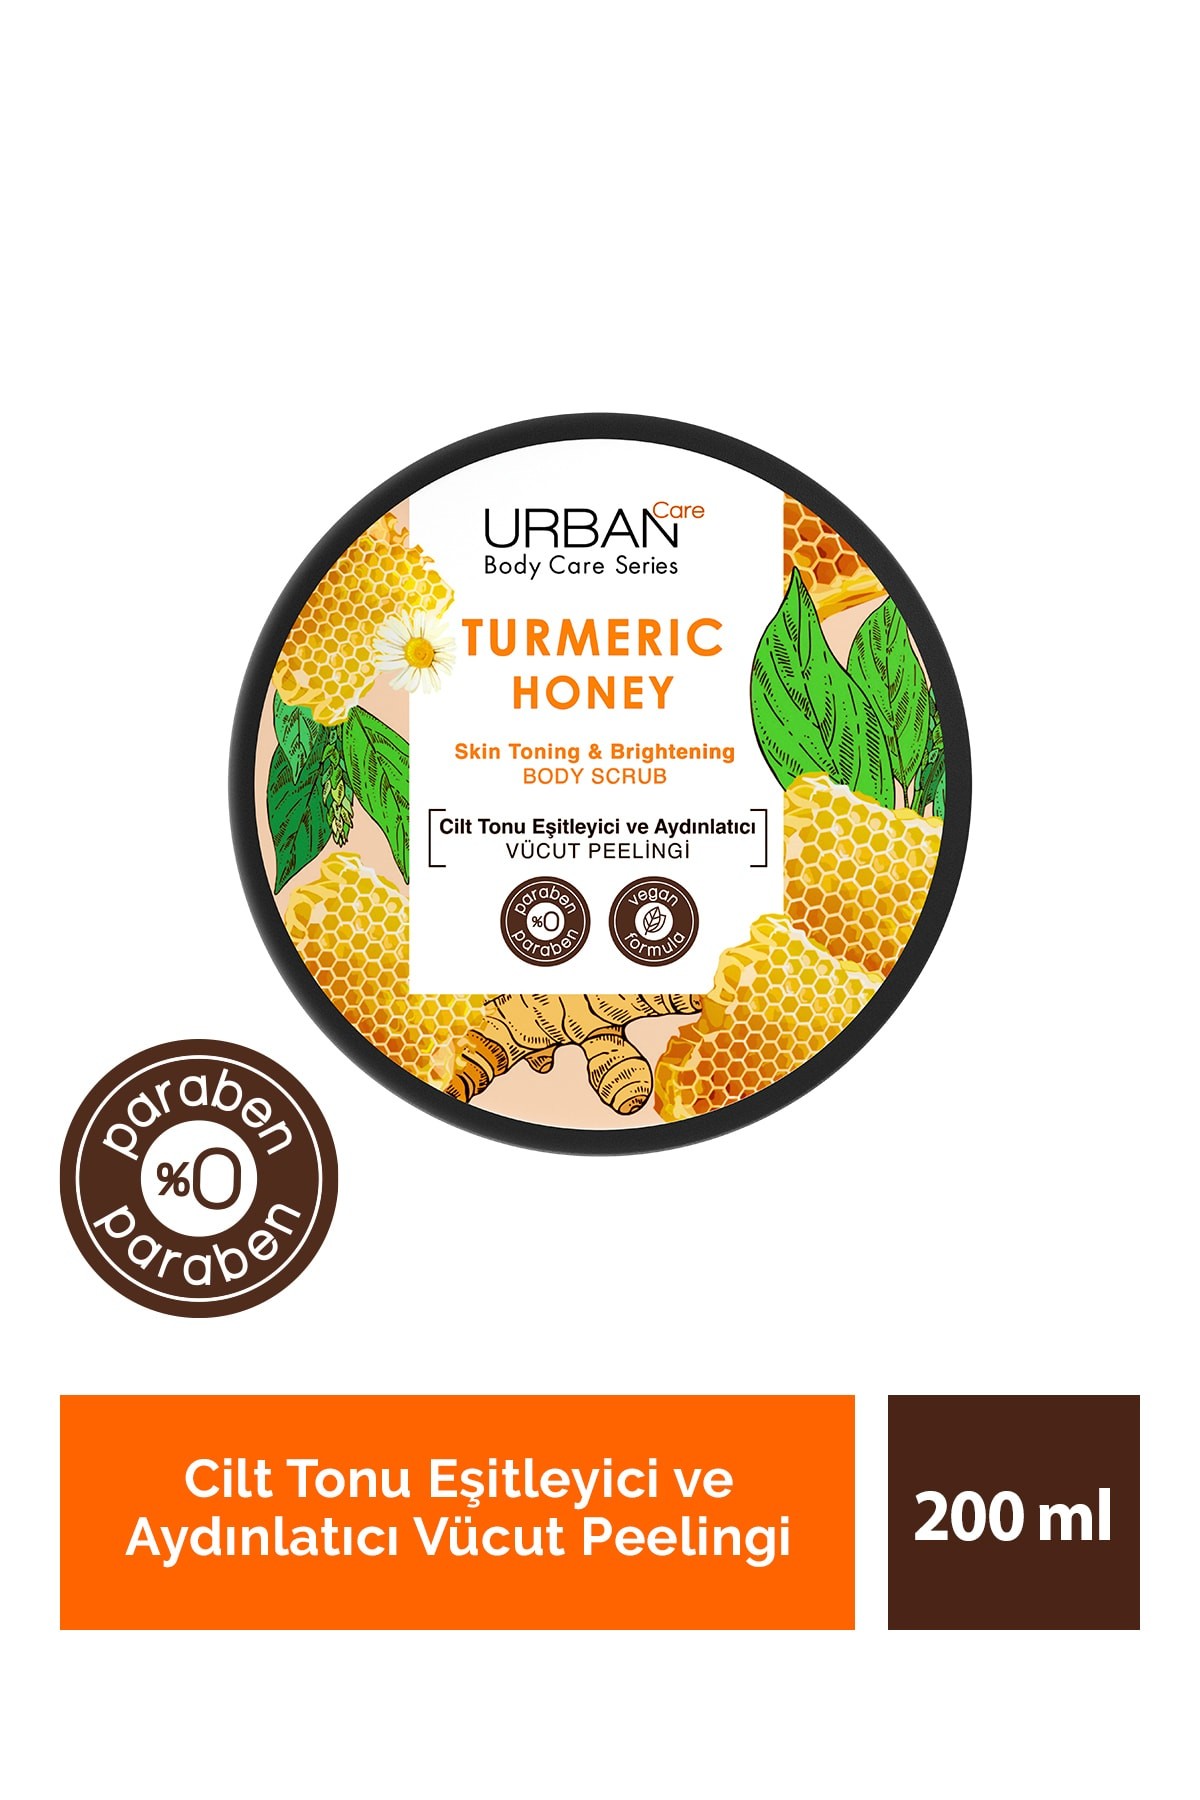 Urban Care Vücut Peeling 200 Ml Tumerıc Honey